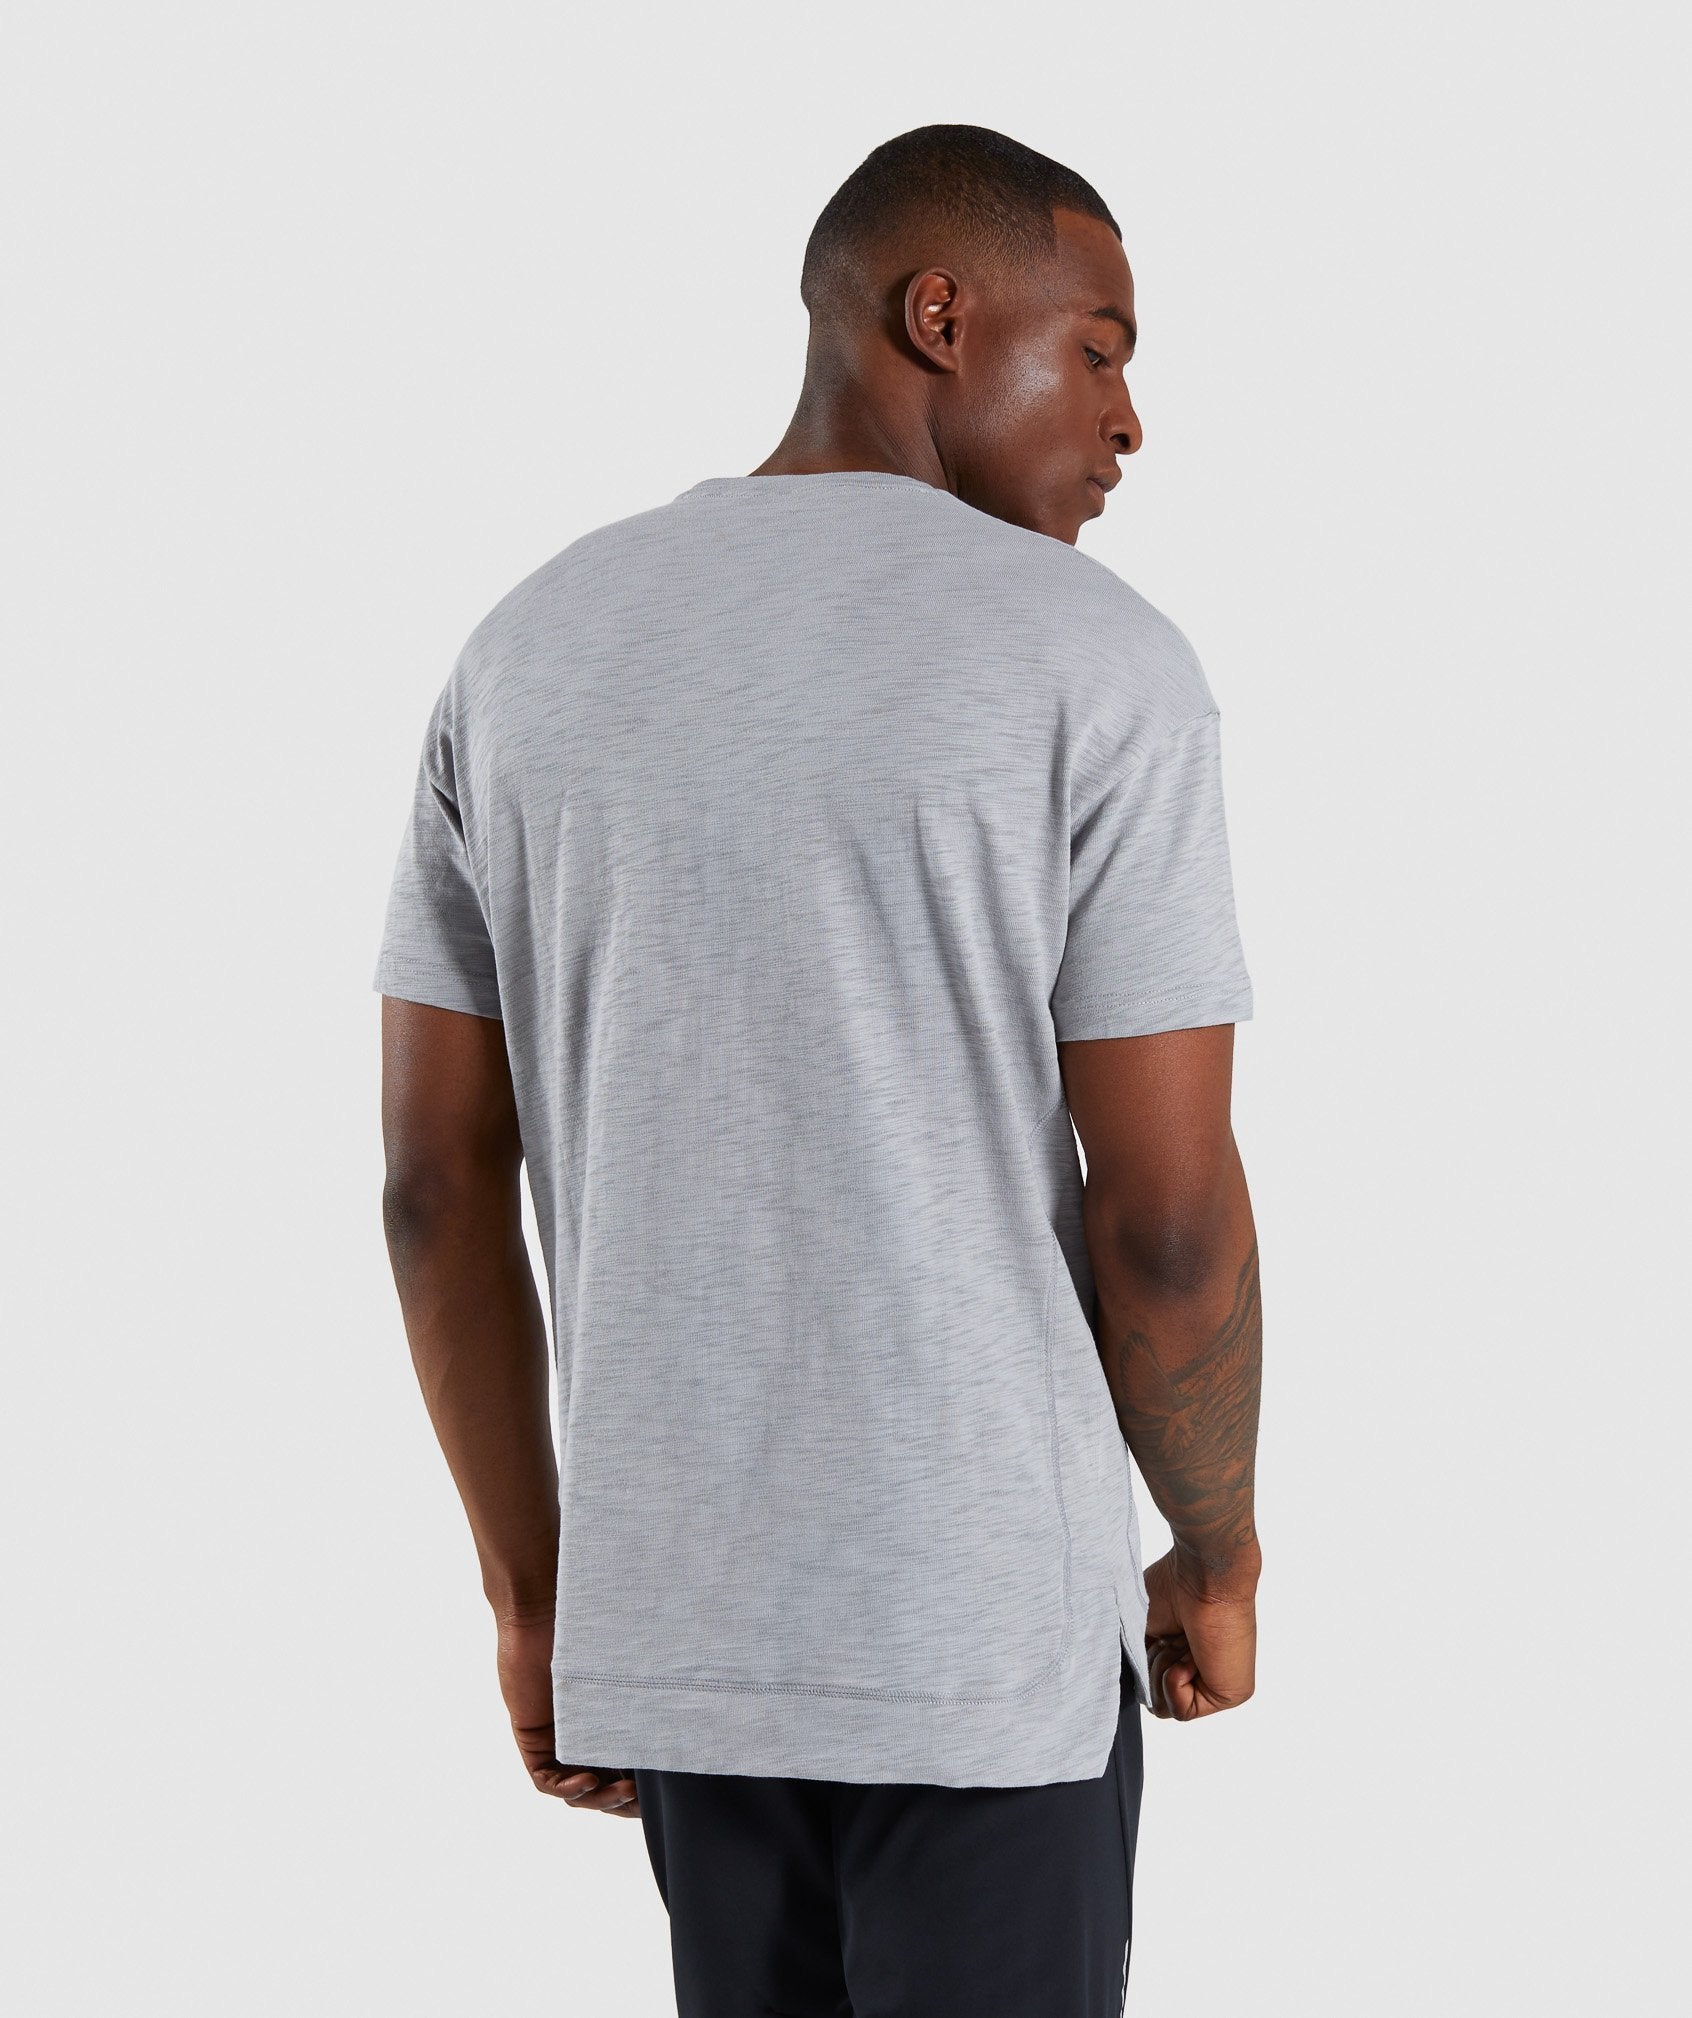 Tonal T-Shirt in Light Grey - view 2